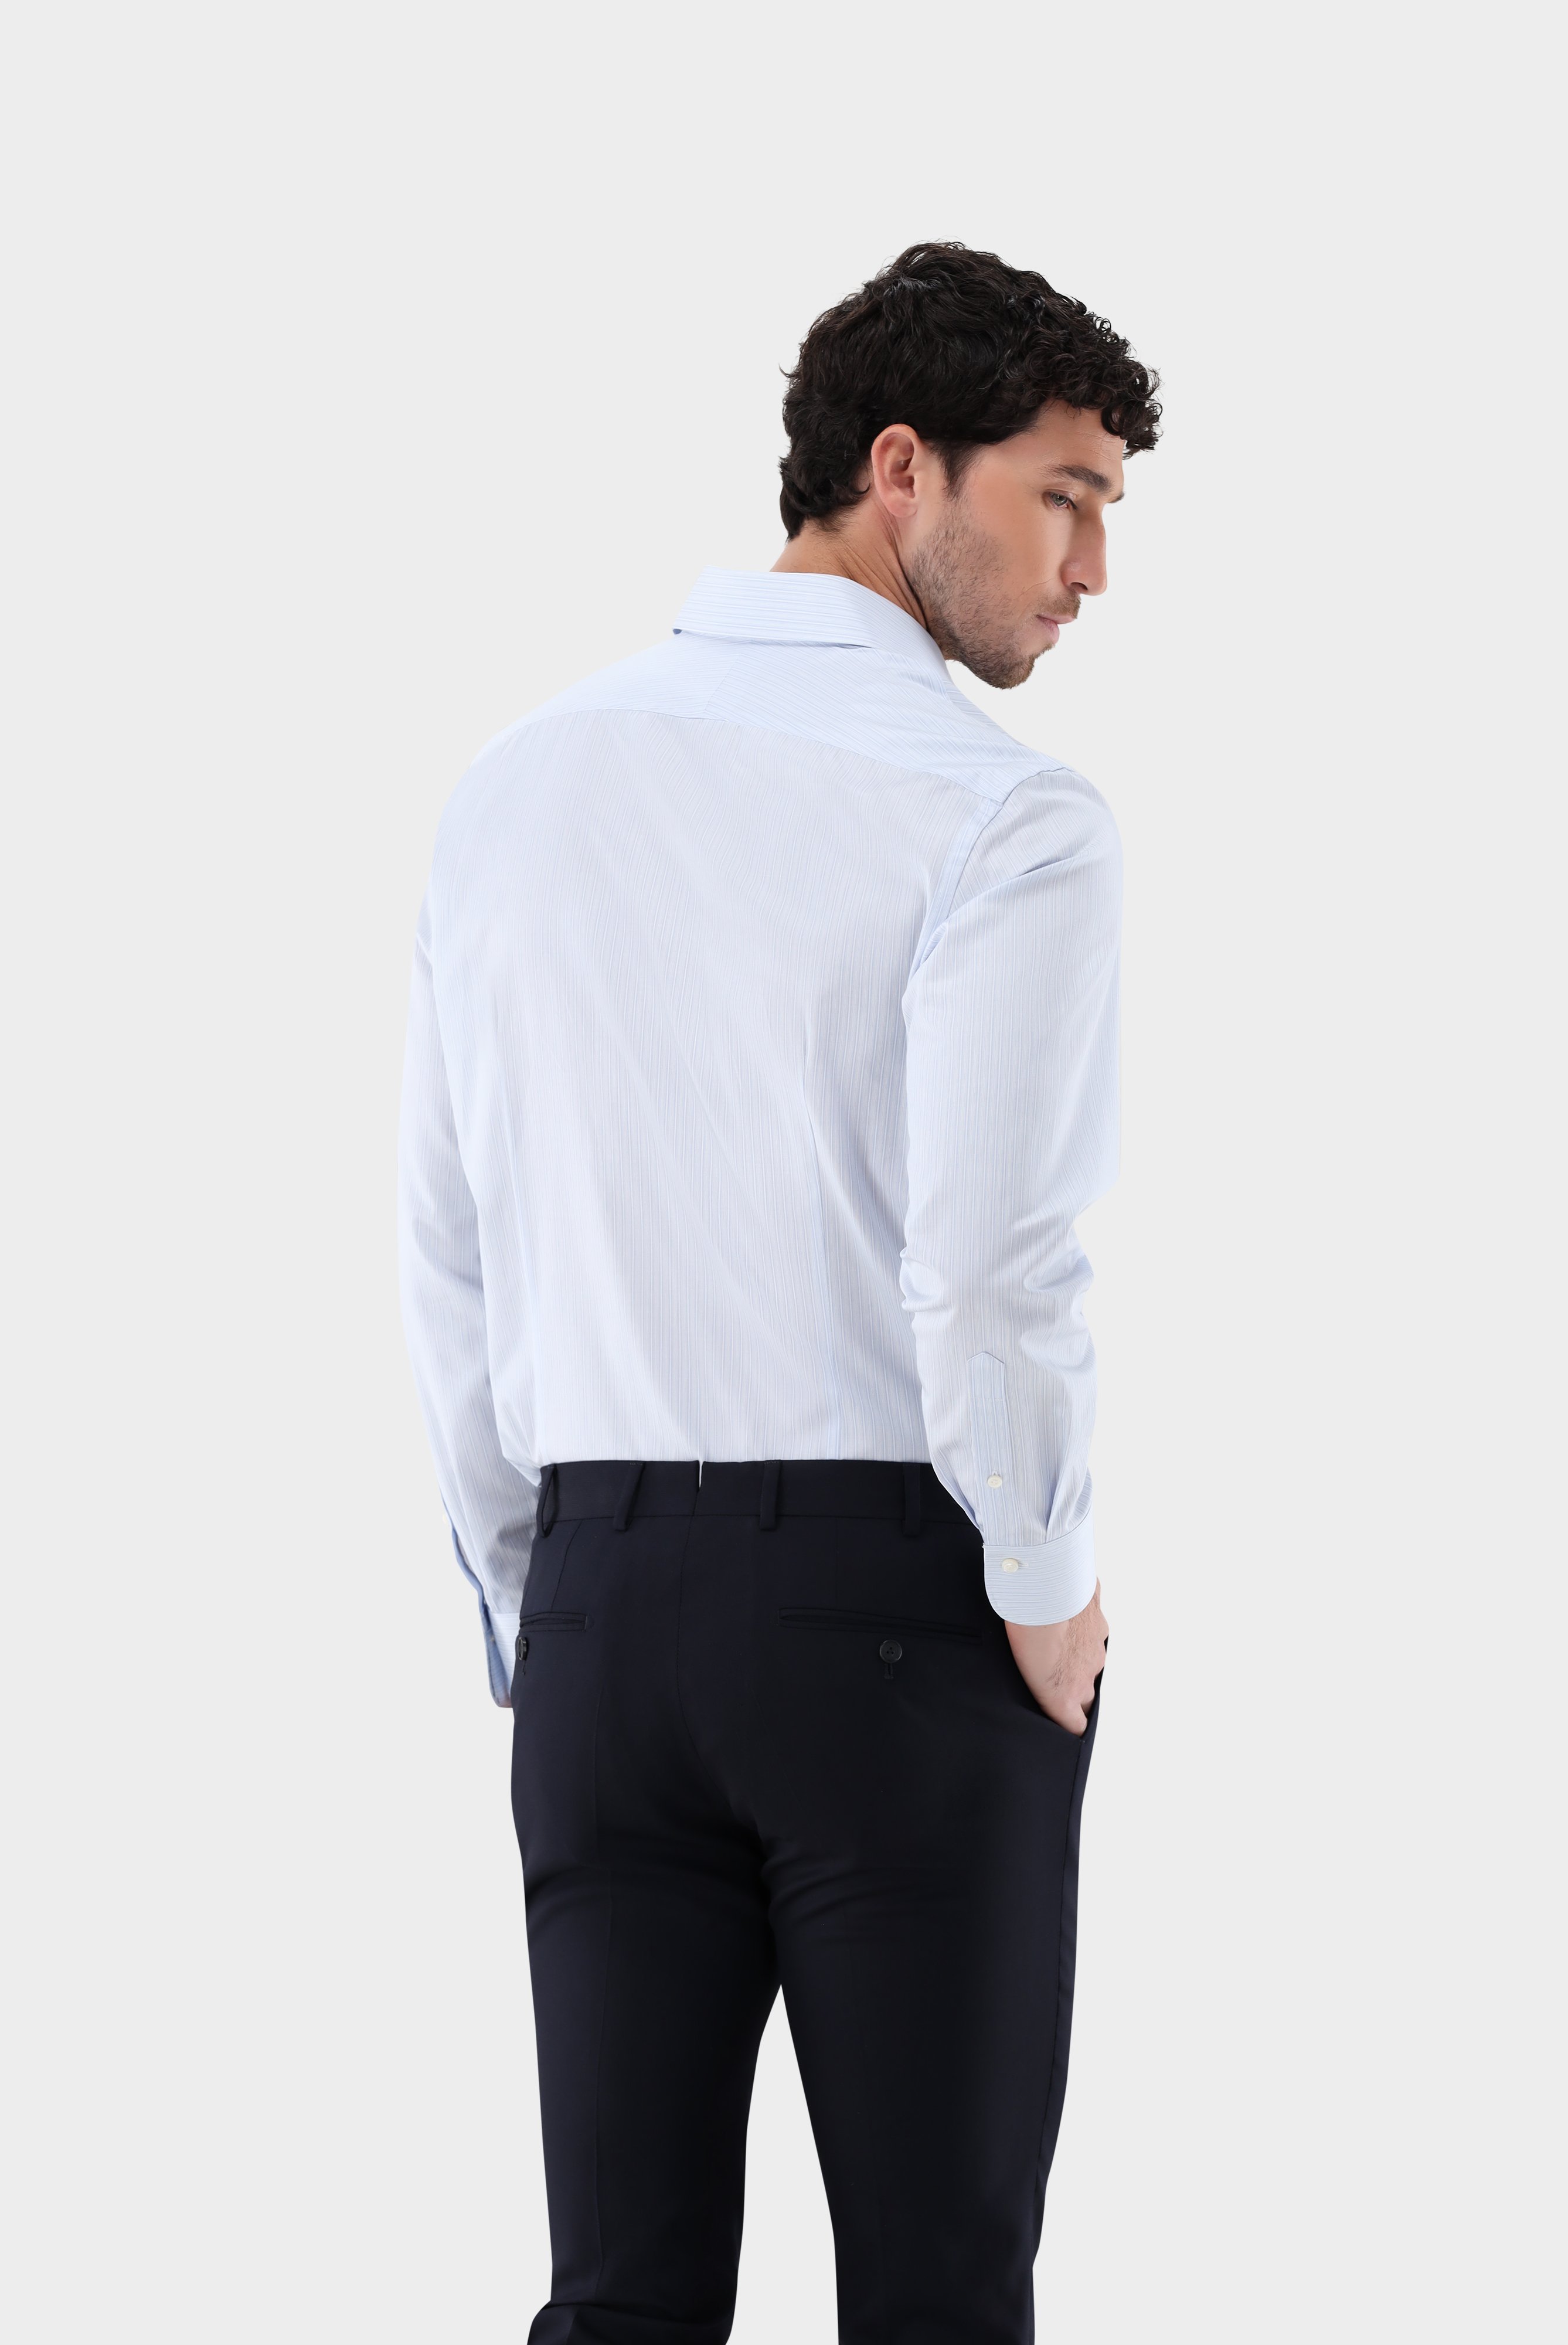 Slim-Fit Hemden+Gestreiftes Twill Hemd in Sartoriale Verarbeitung Slim Fit+20.2500.NV.151816.720.38